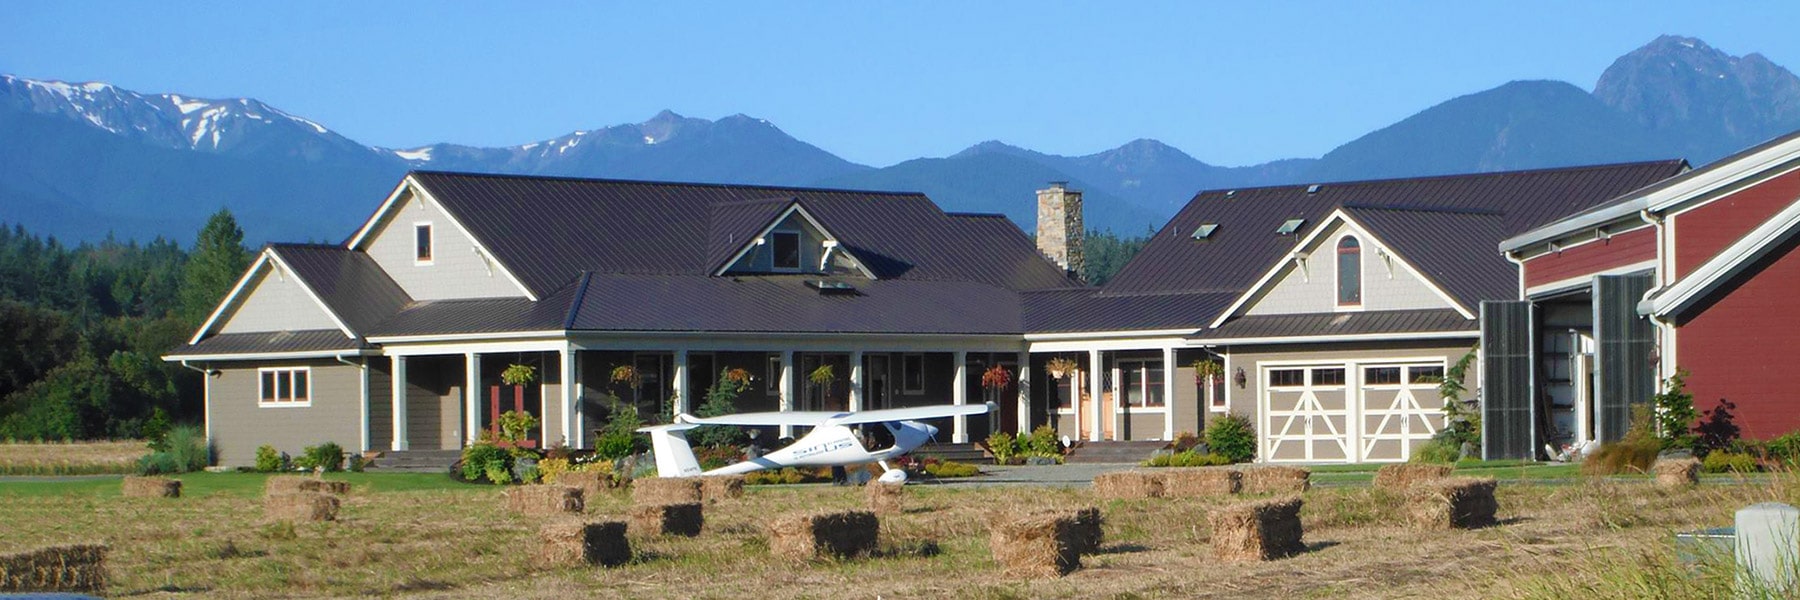 Discovery Trail Farm Airpark